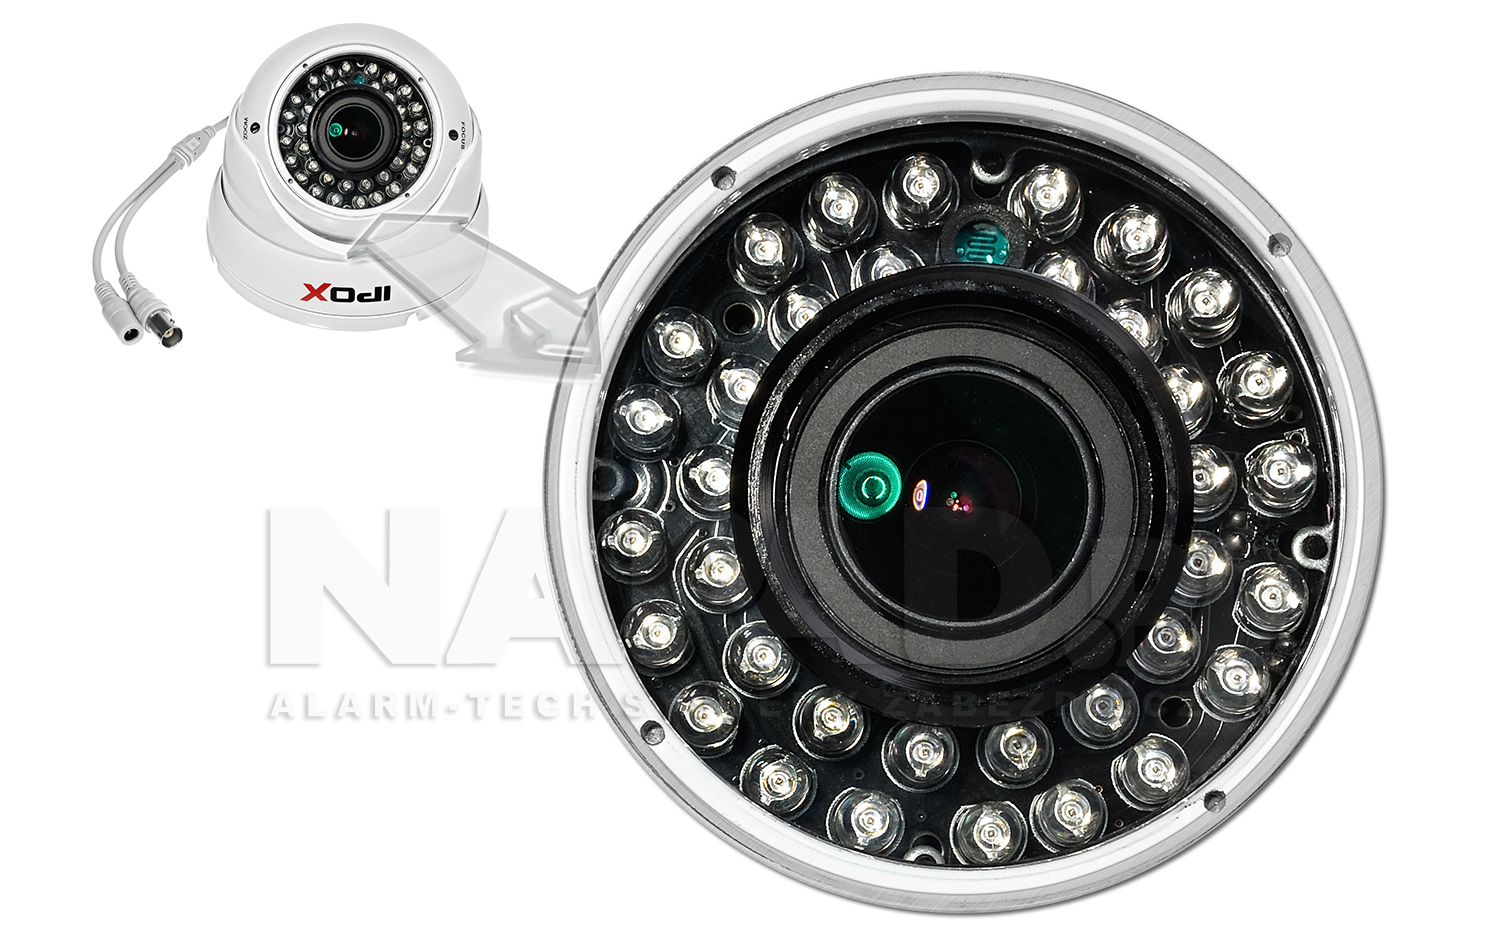 Wydajny oświetlacz podczerwieni w kamerze CV1036DV zapewnia możliwość rejestracji obrazu w nocy.